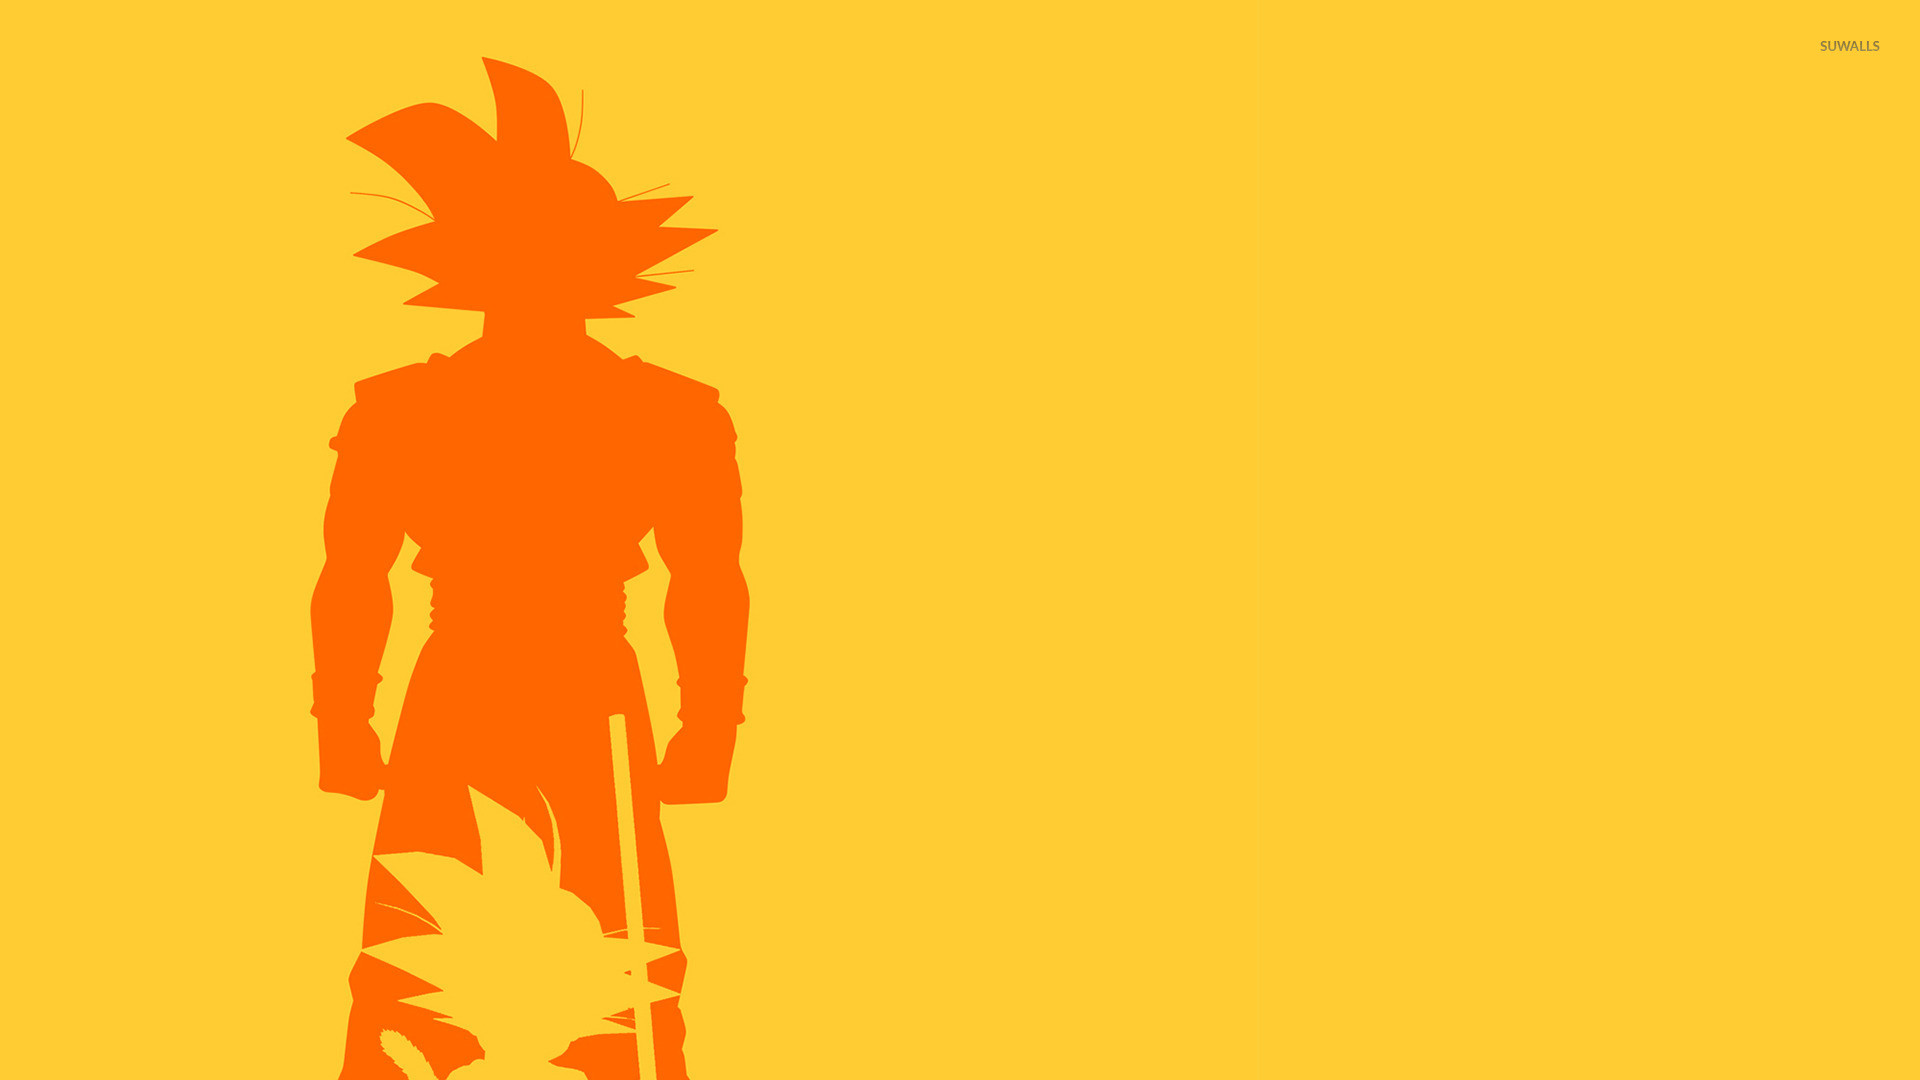 Goku Kid and Adult Wallpaper - Dragon Ball.jpg